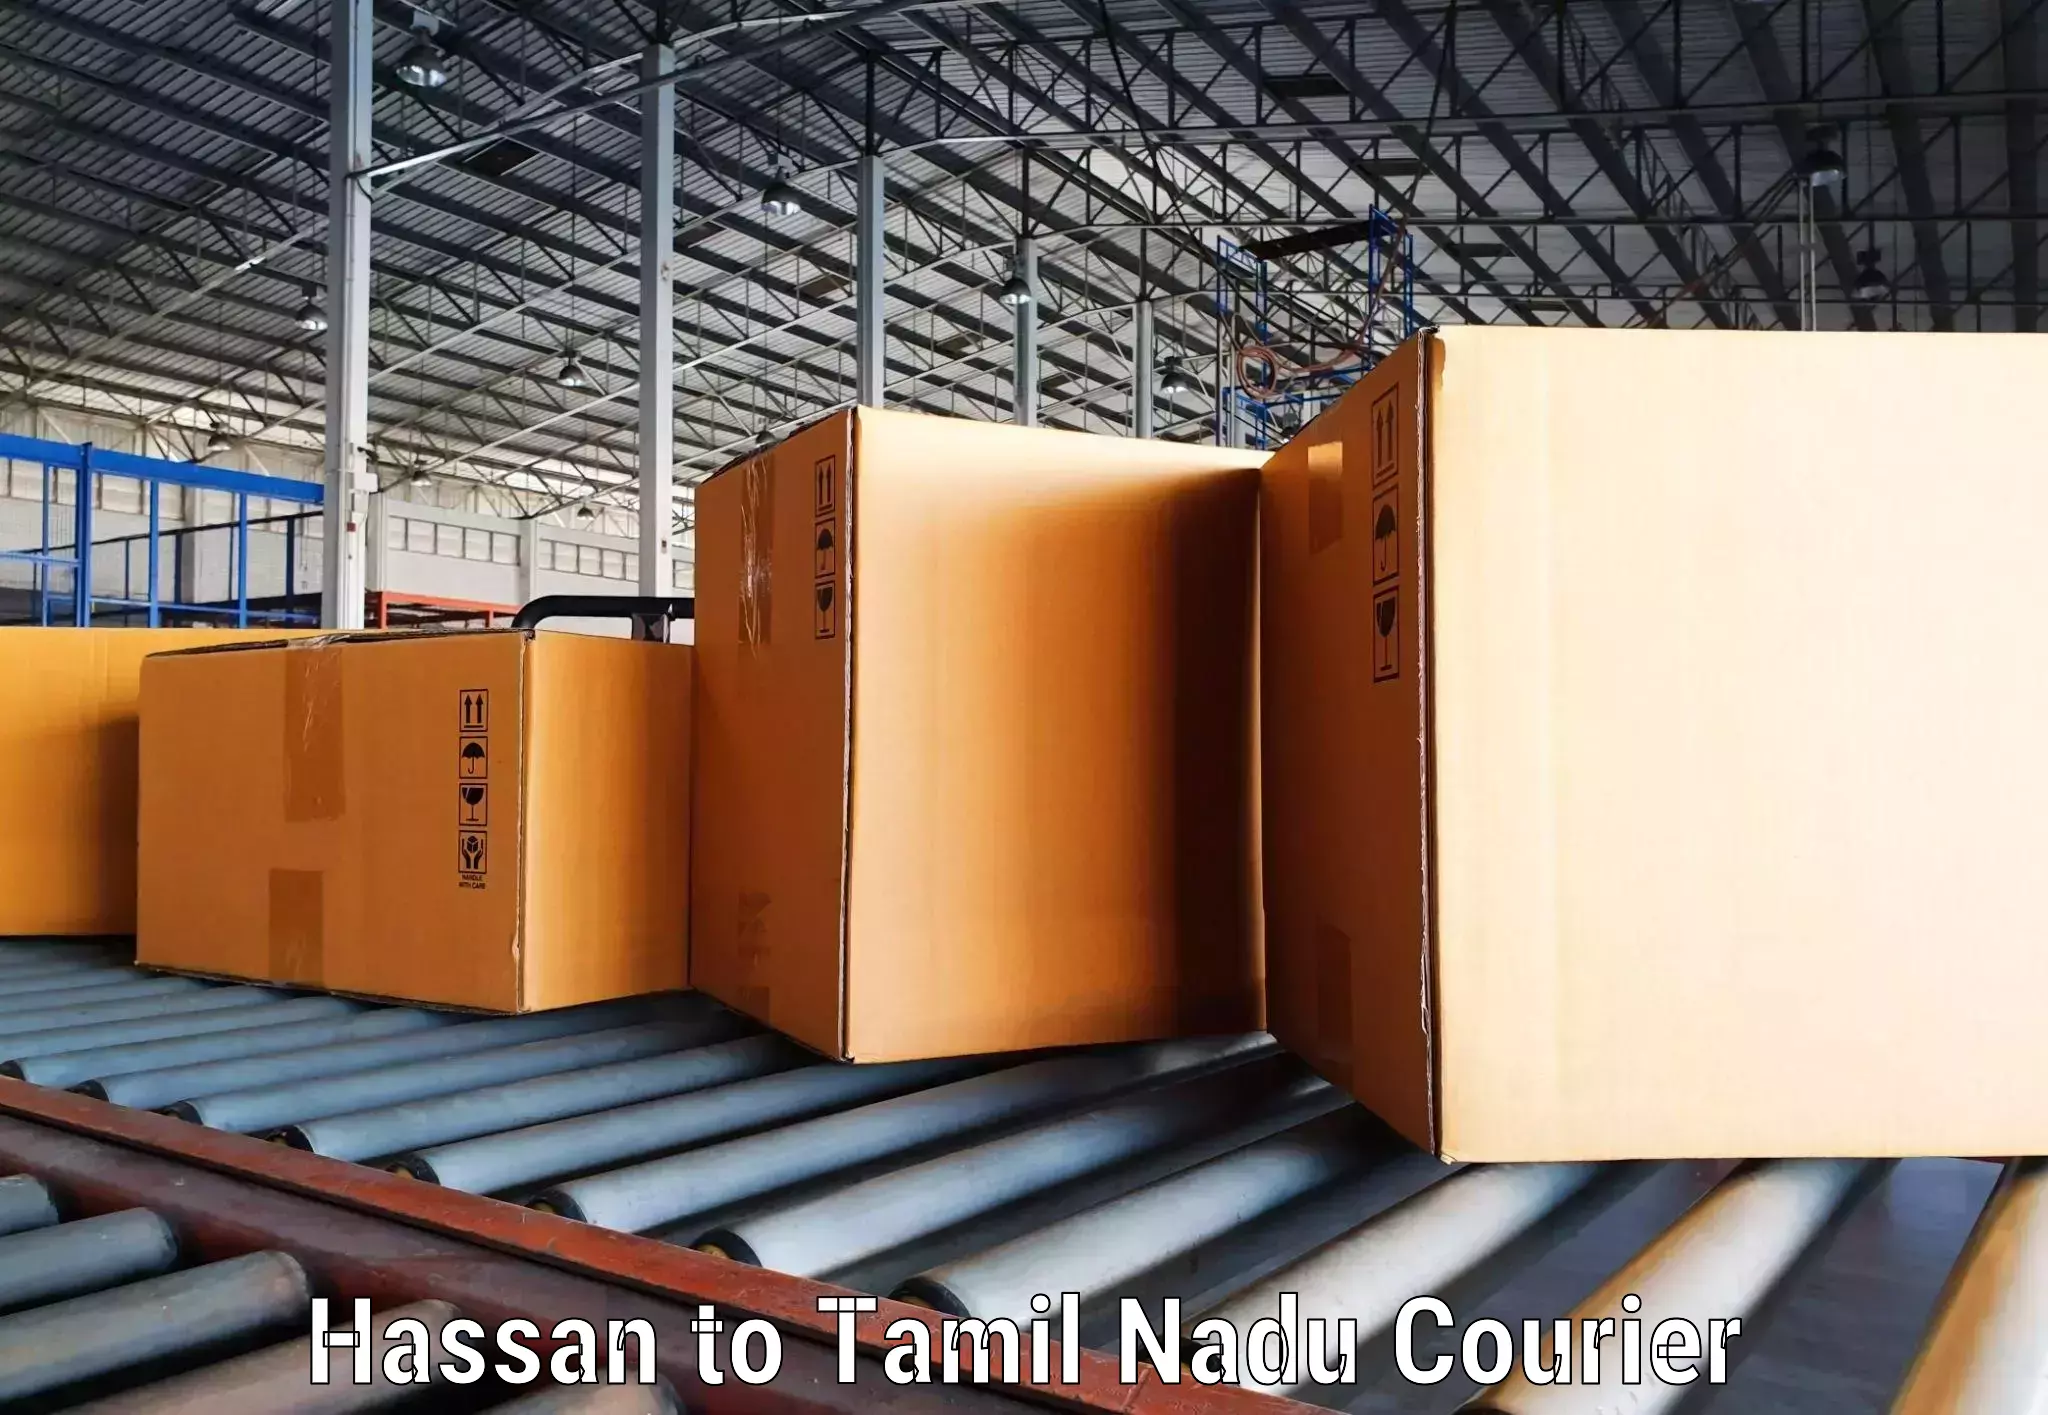 Door-to-door freight service Hassan to Tamil Nadu